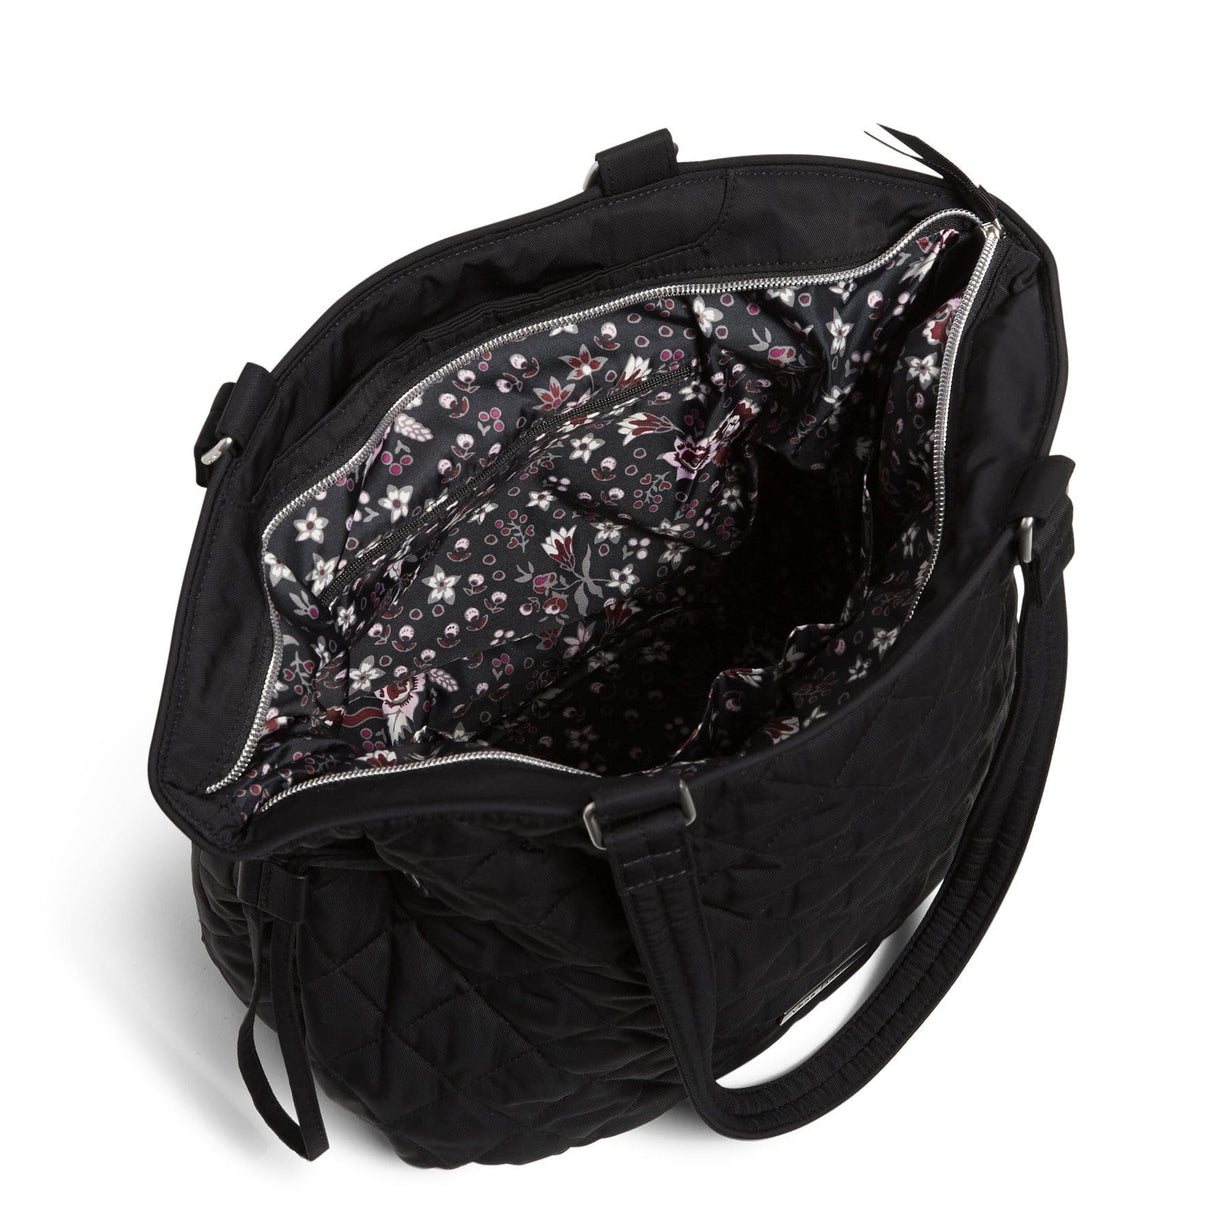 Cinch Shoulder Bag – Vera Bradley